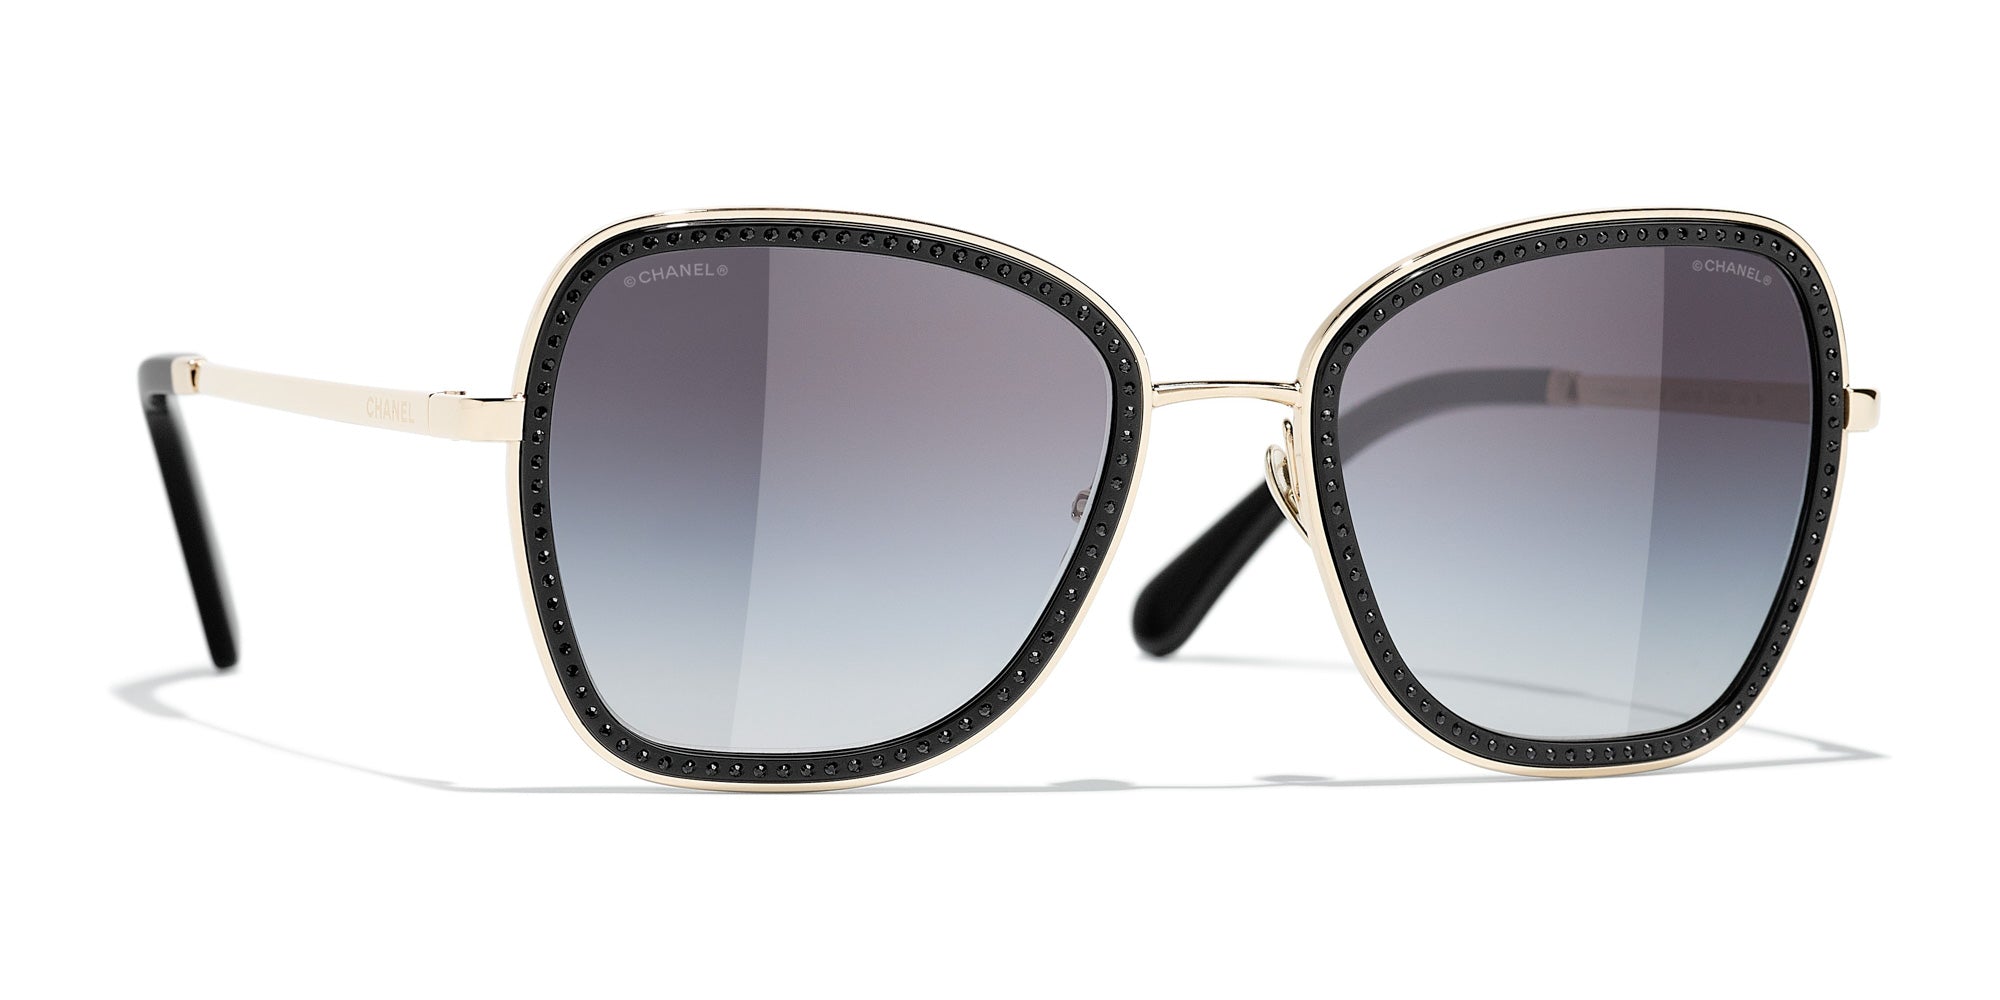 Chanel Round Mirrored Sunglasses - Gold Sunglasses, Accessories